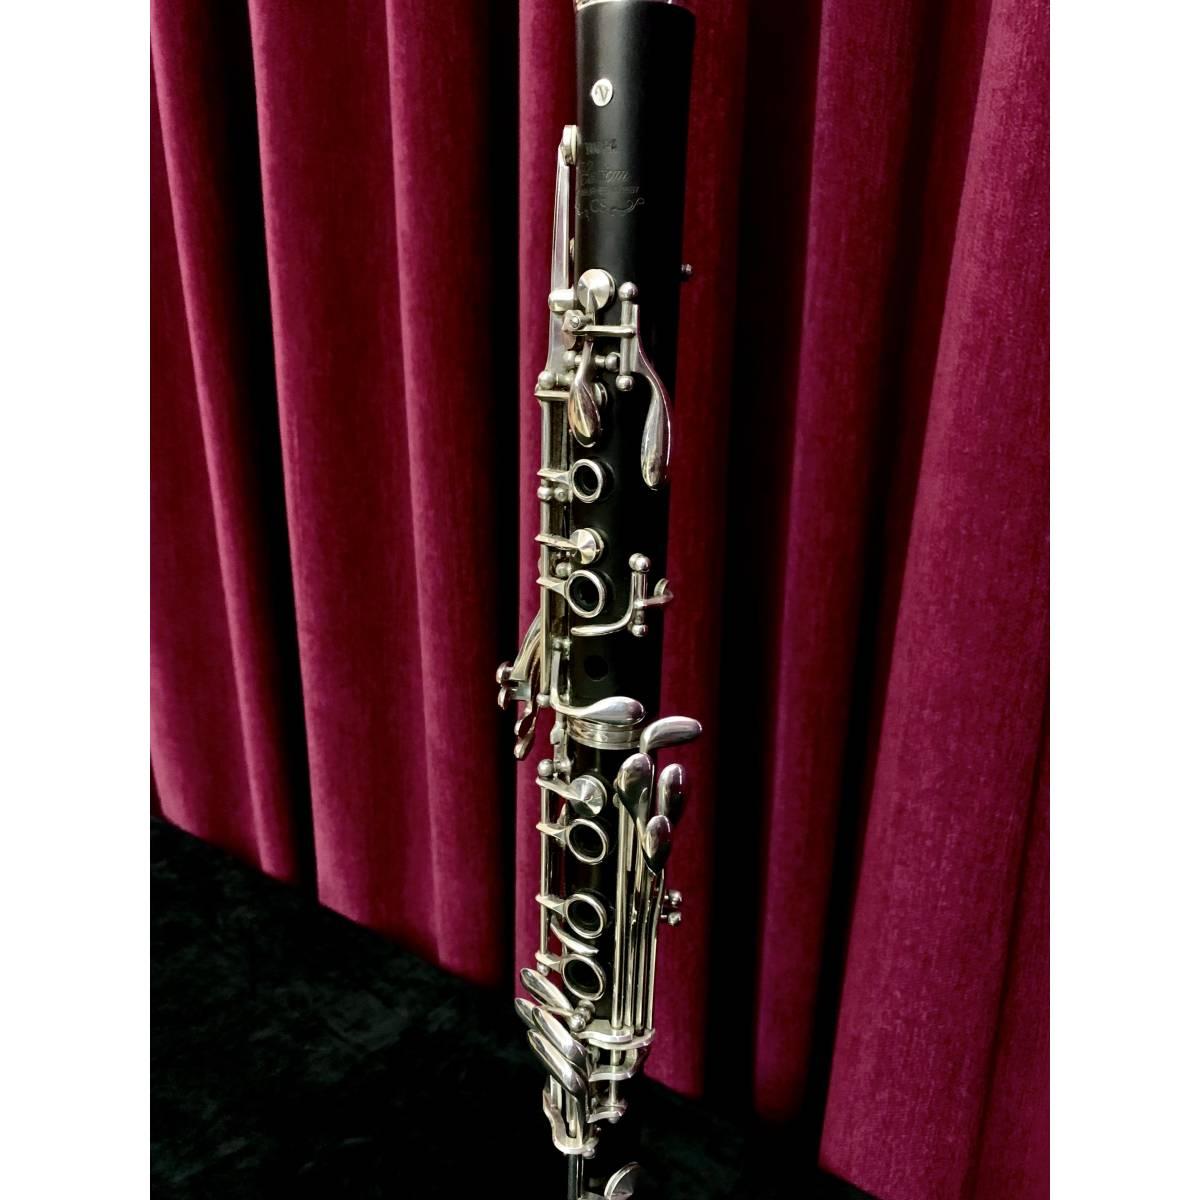 Yamaha cs custom clarinetto sib 18/6